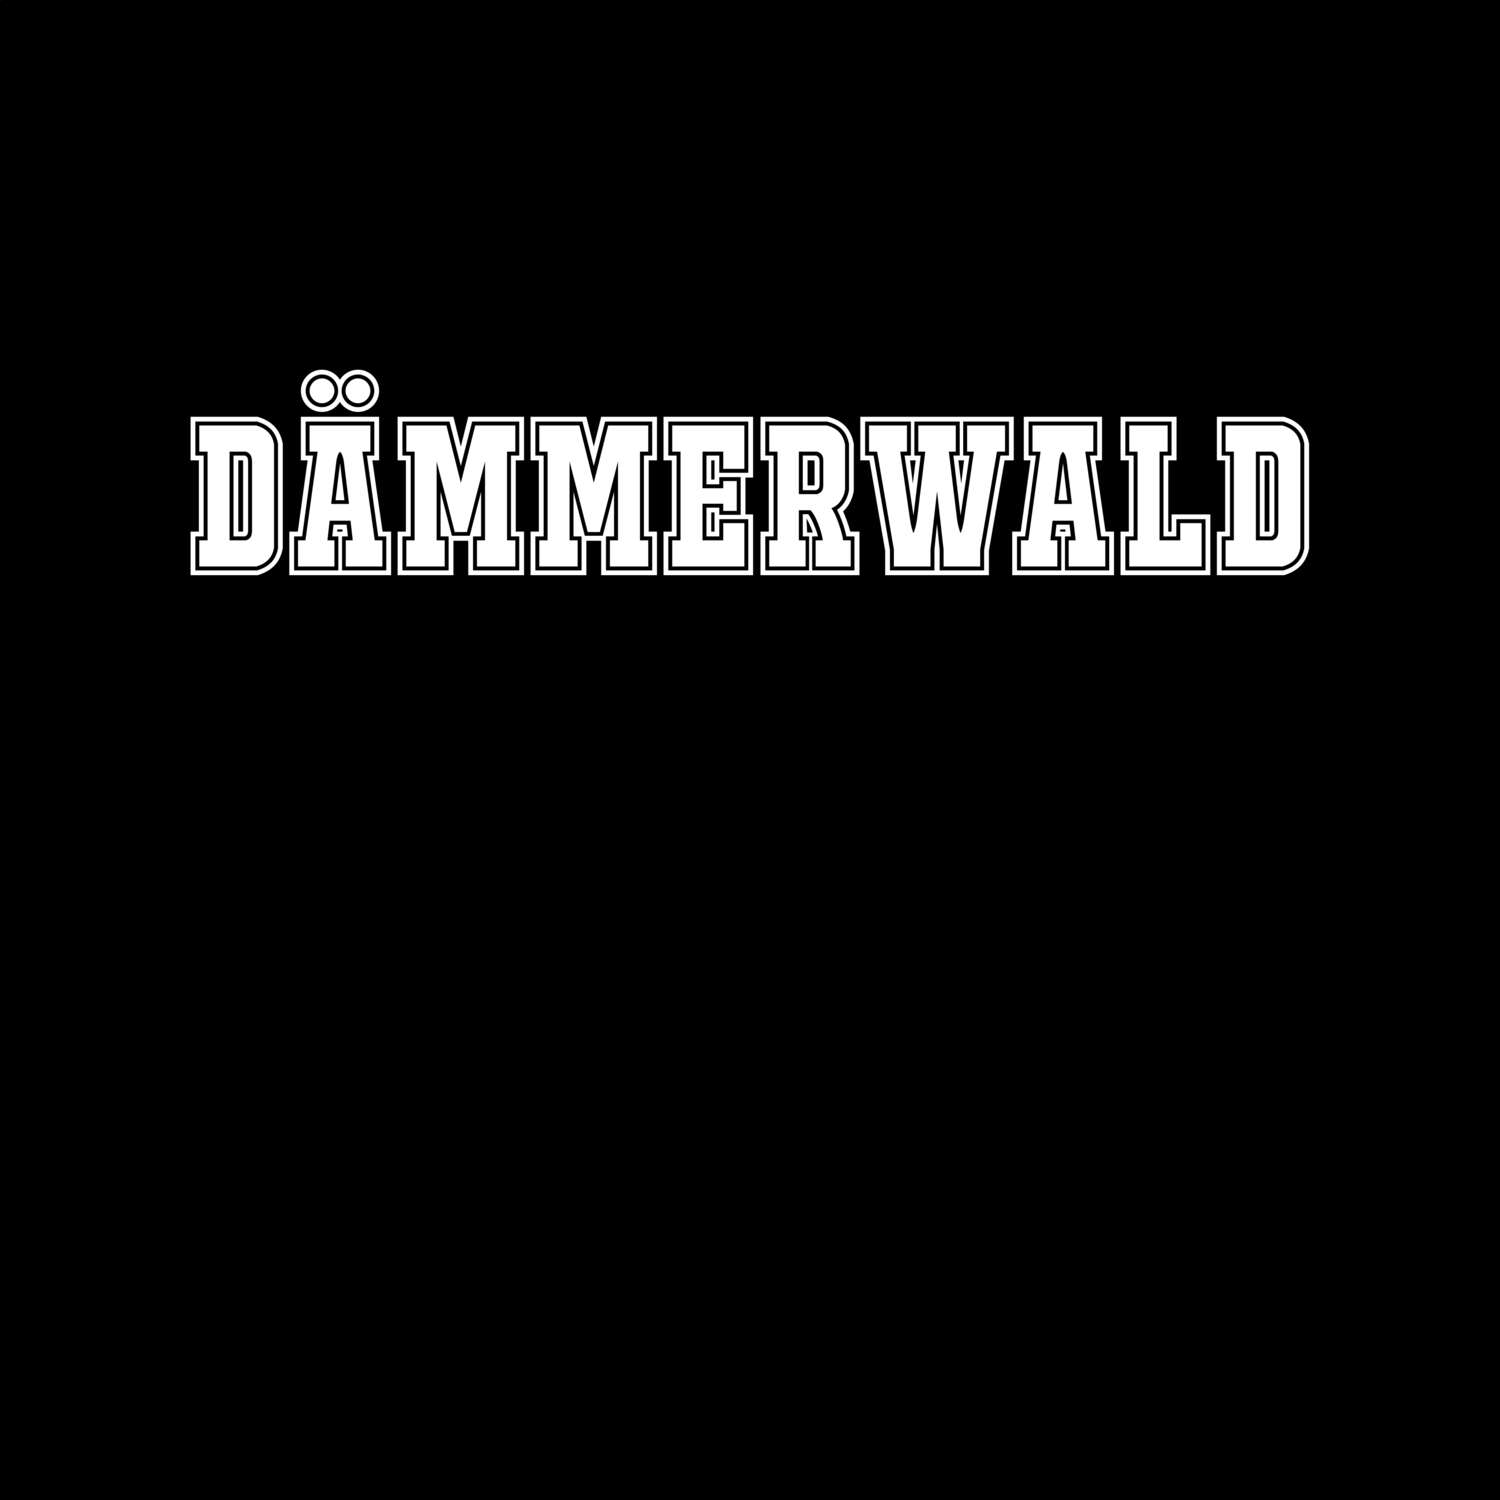 Dämmerwald T-Shirt »Classic«